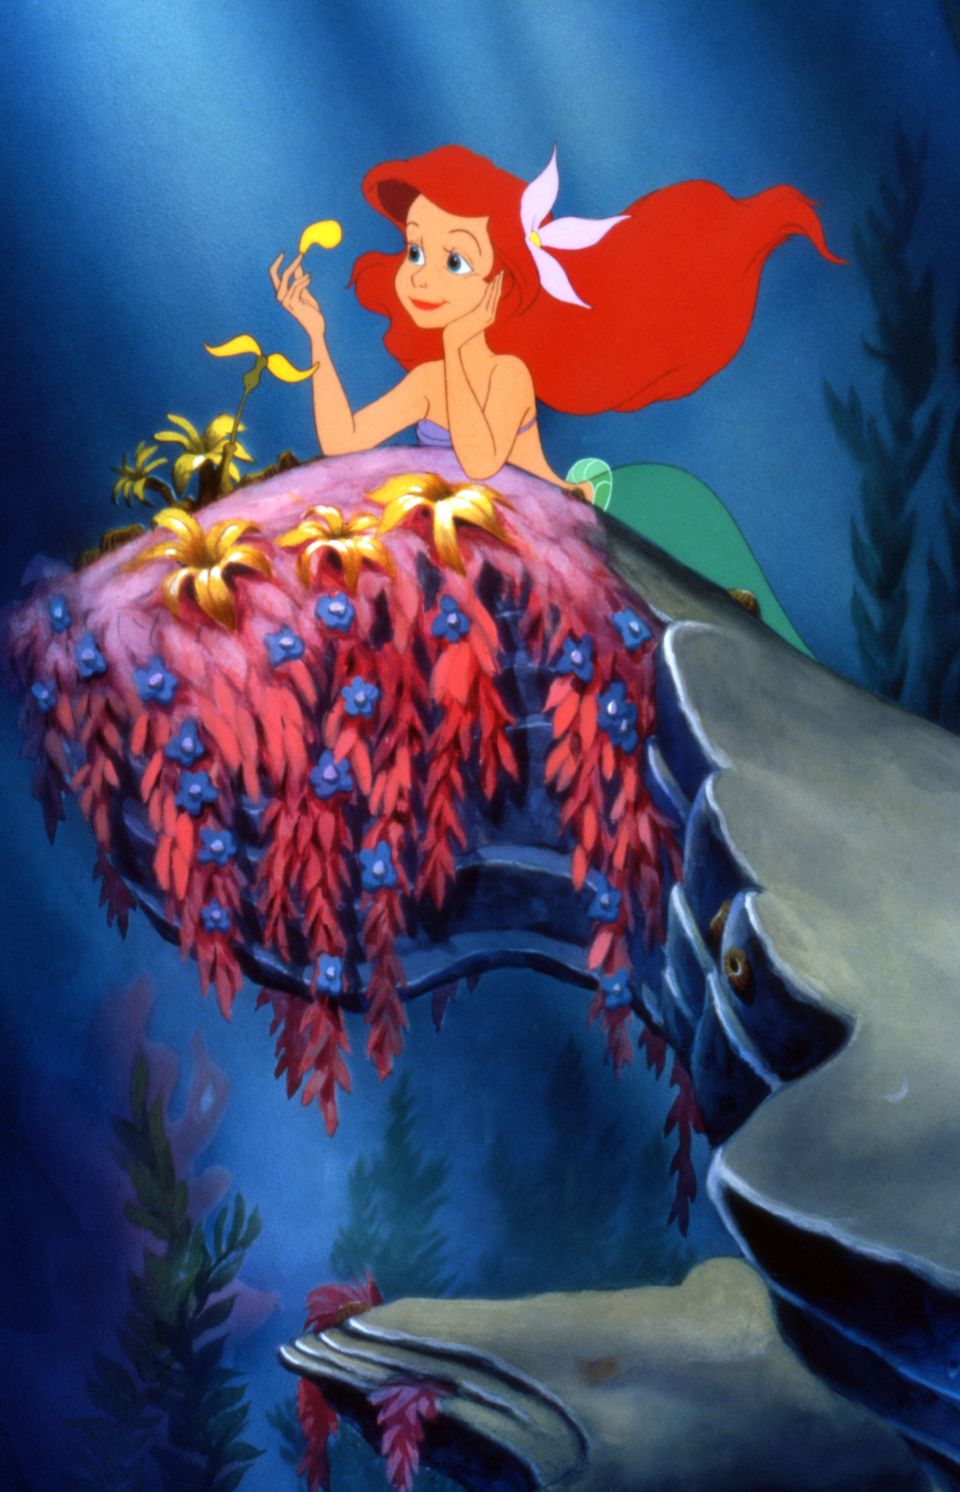 30 Things You Missed In Disney's Original The Little Mermaid